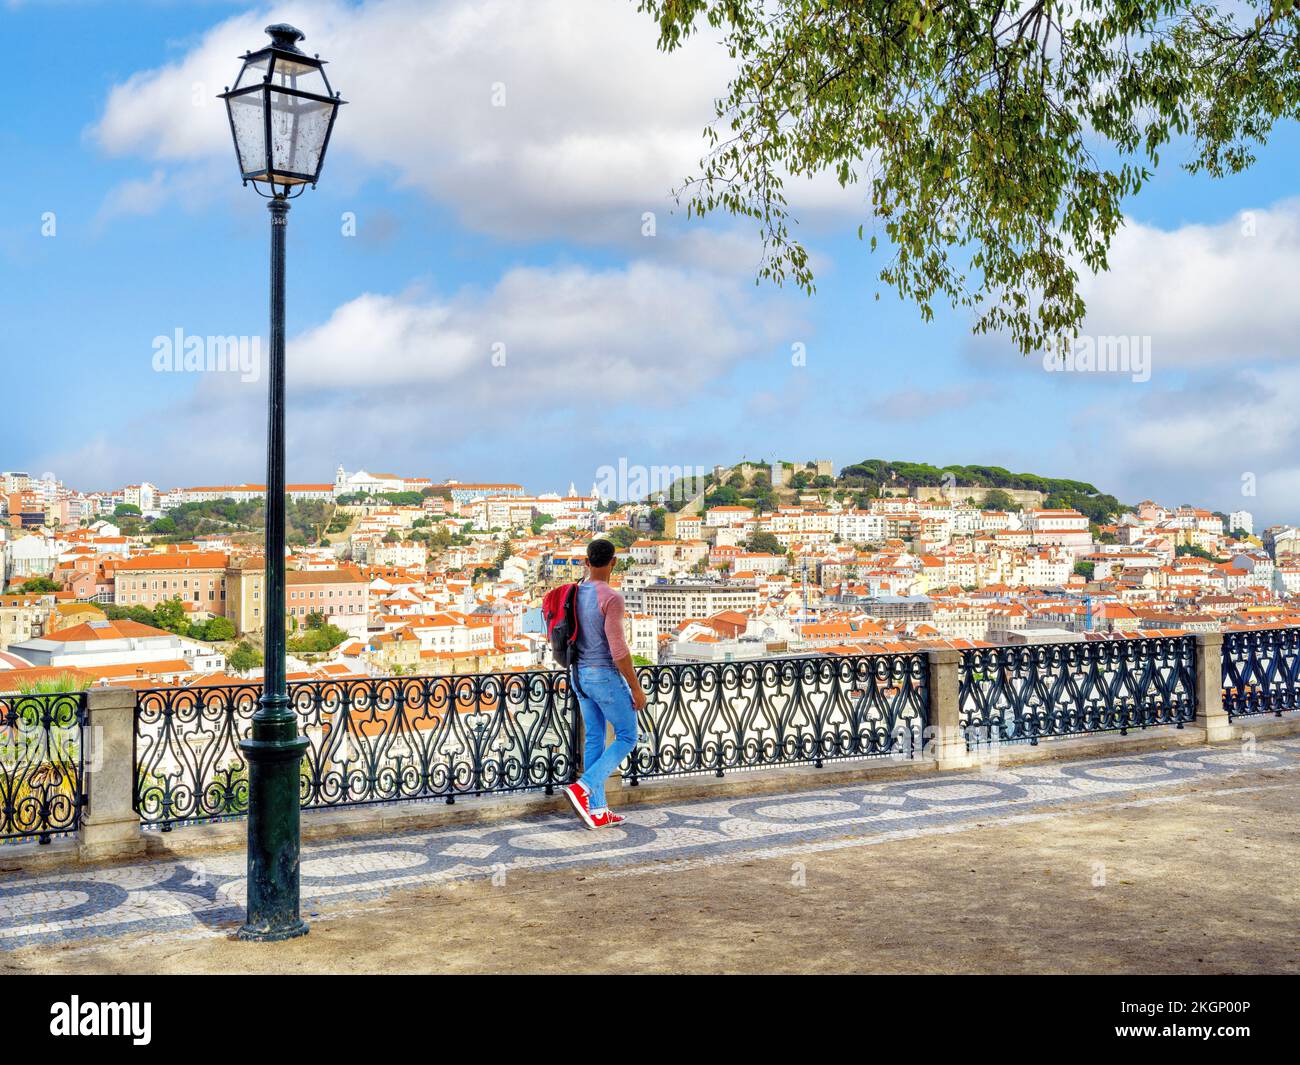 Miradouro de Sao Pedro de Alcantara Aussichtspunkt der Stadt, Stadtbild mit wunderschönem Park zwischen Chiado und Barrio Alto Viertel Lissabon, Portugal, EUR Stockfoto